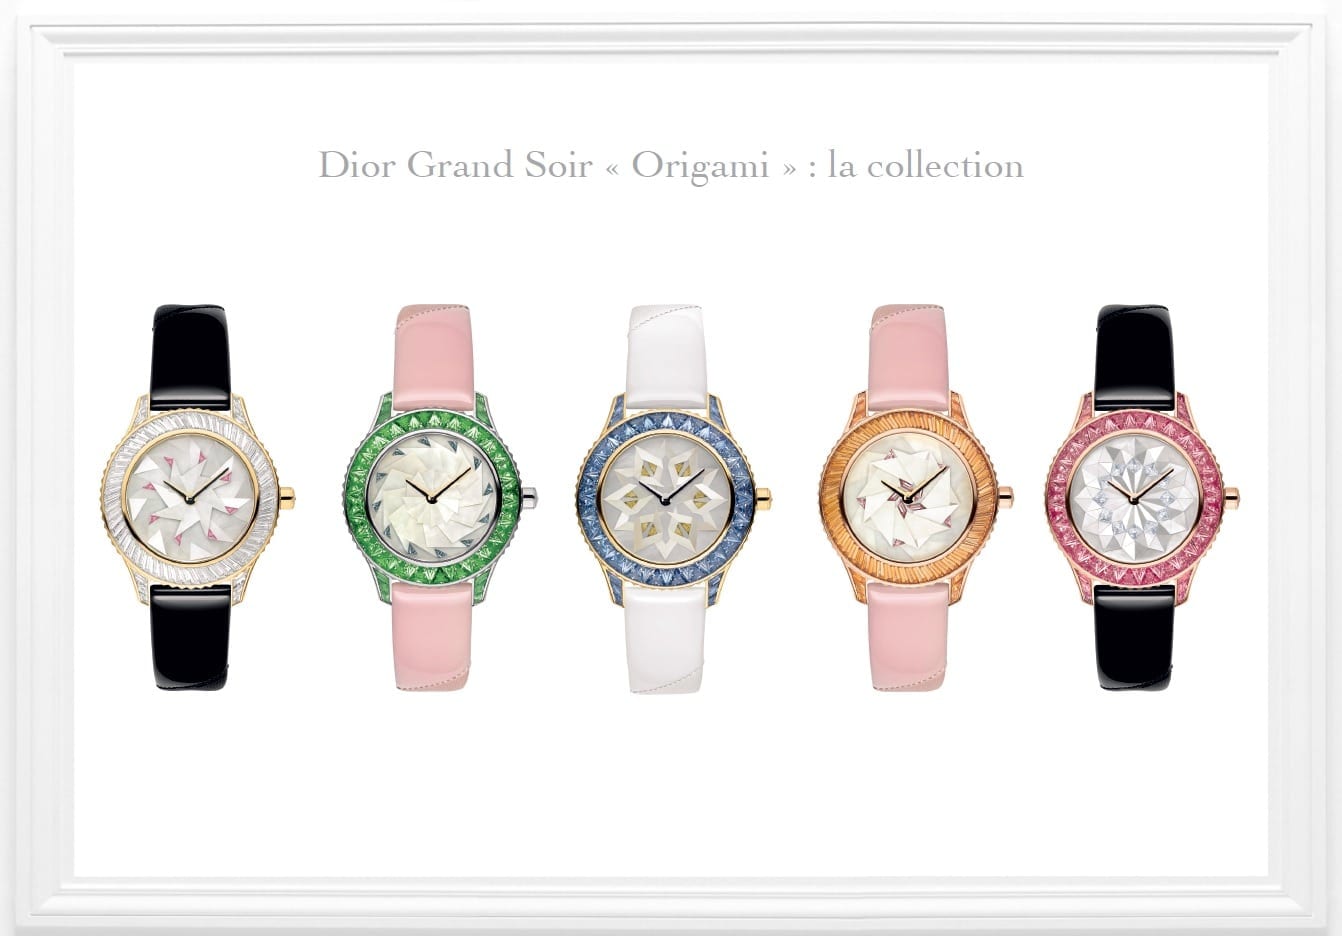 Dior-Grand-Soir-Origami-collection